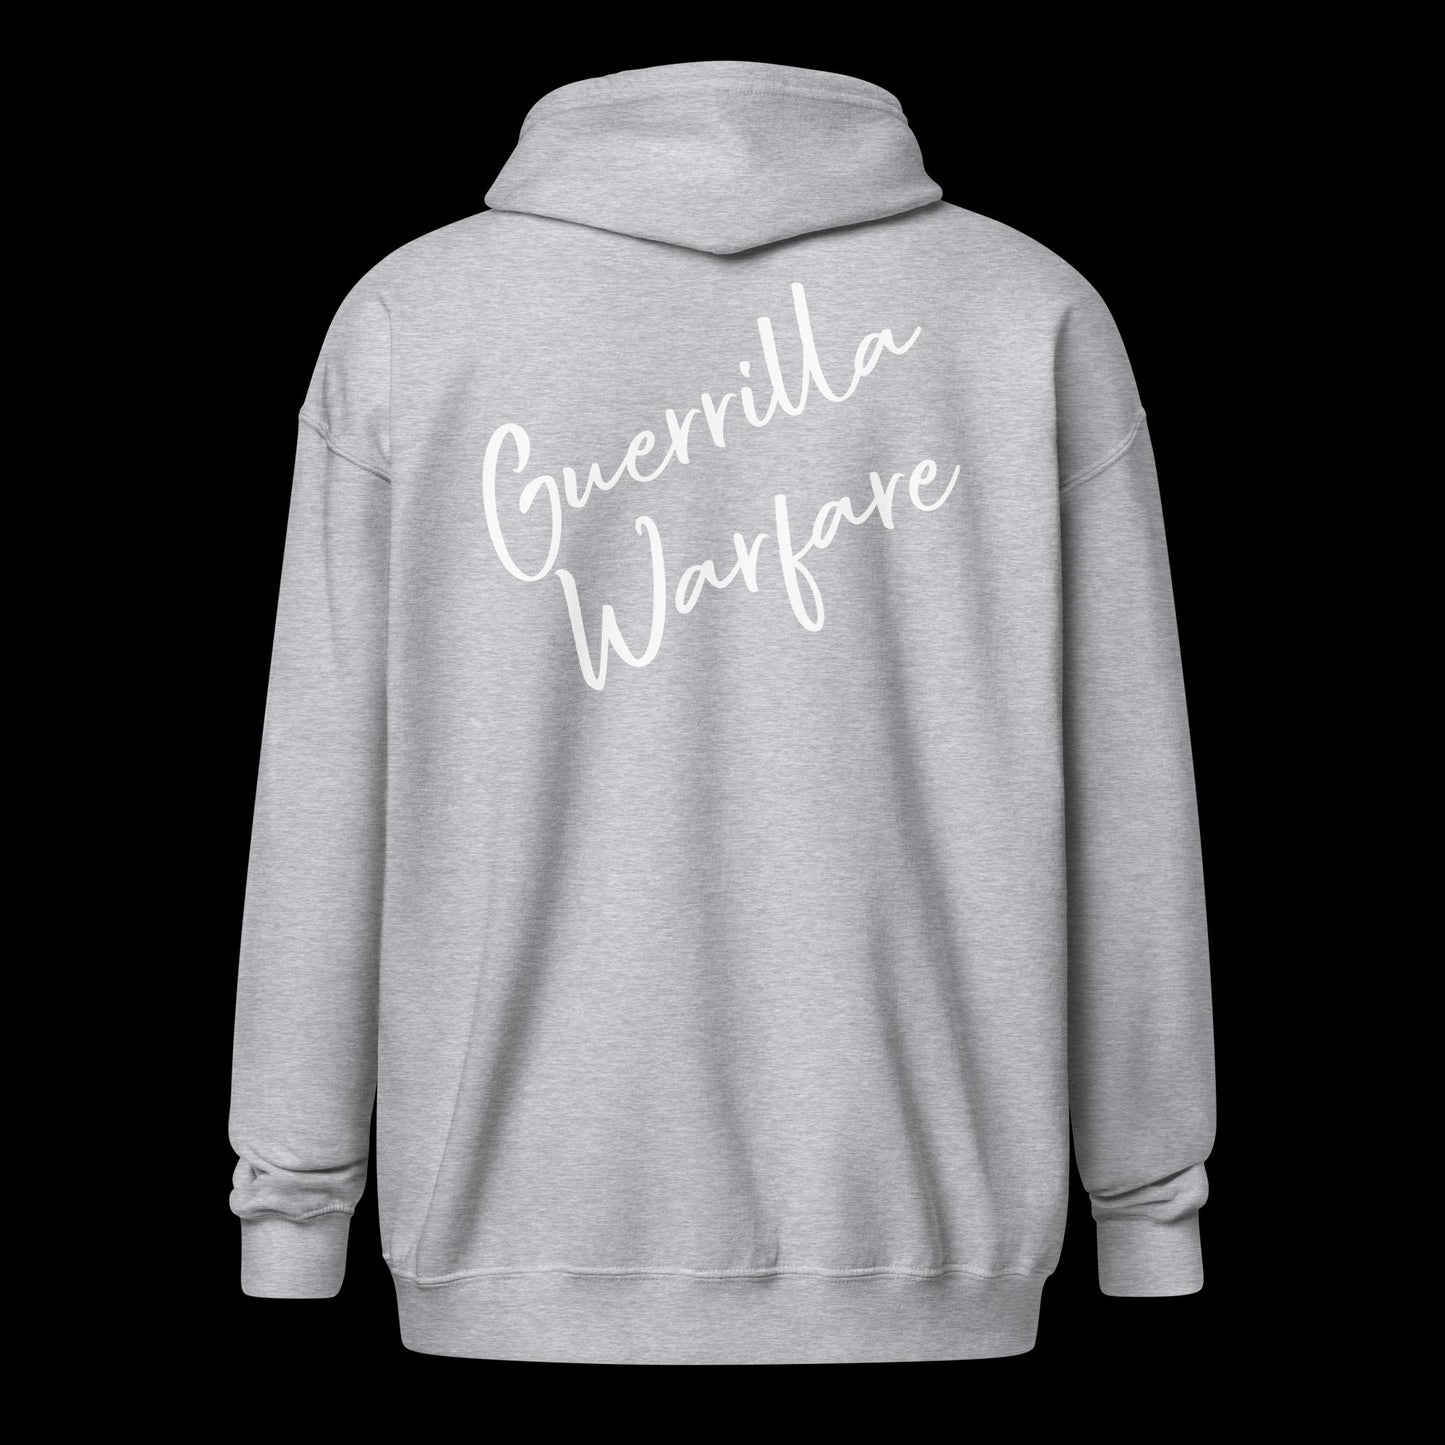 Script GWA Unisex heavy blend zip hoodie